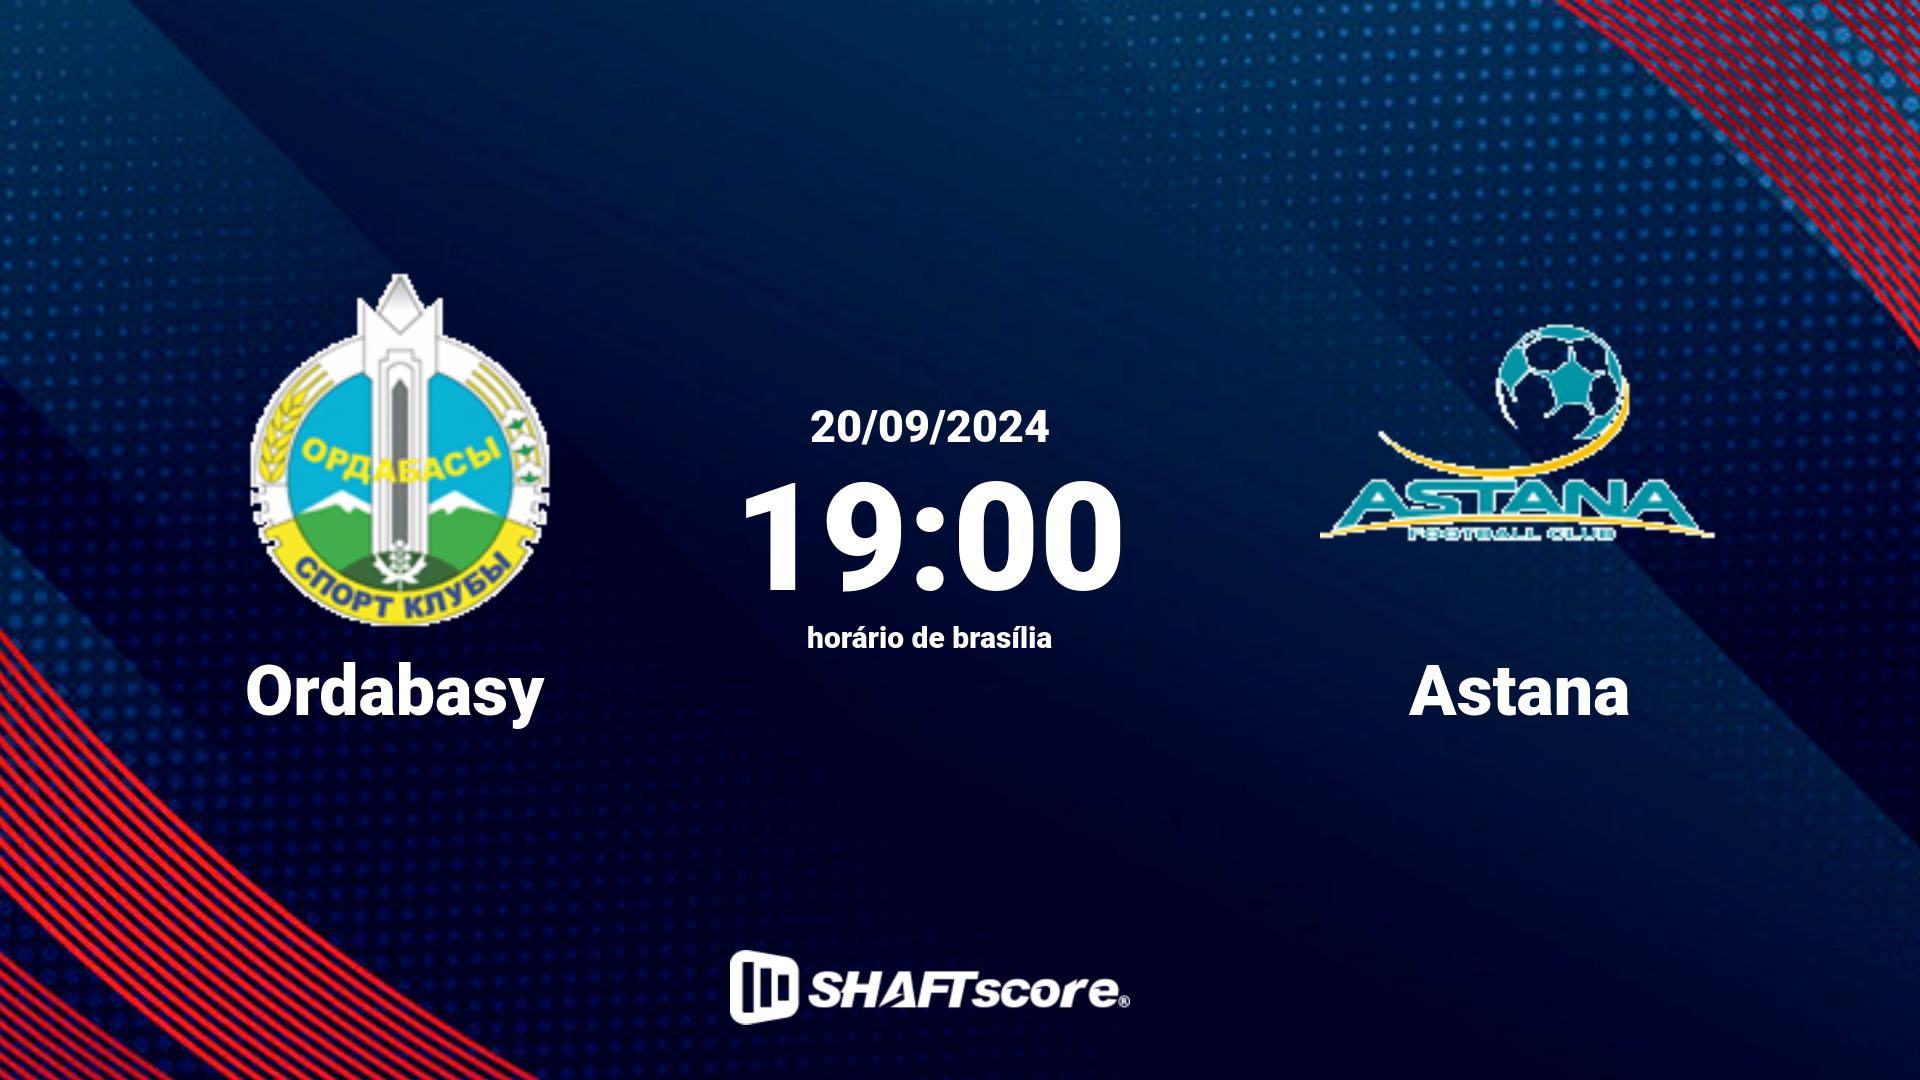 Estatísticas do jogo Ordabasy vs Astana 20.09 19:00